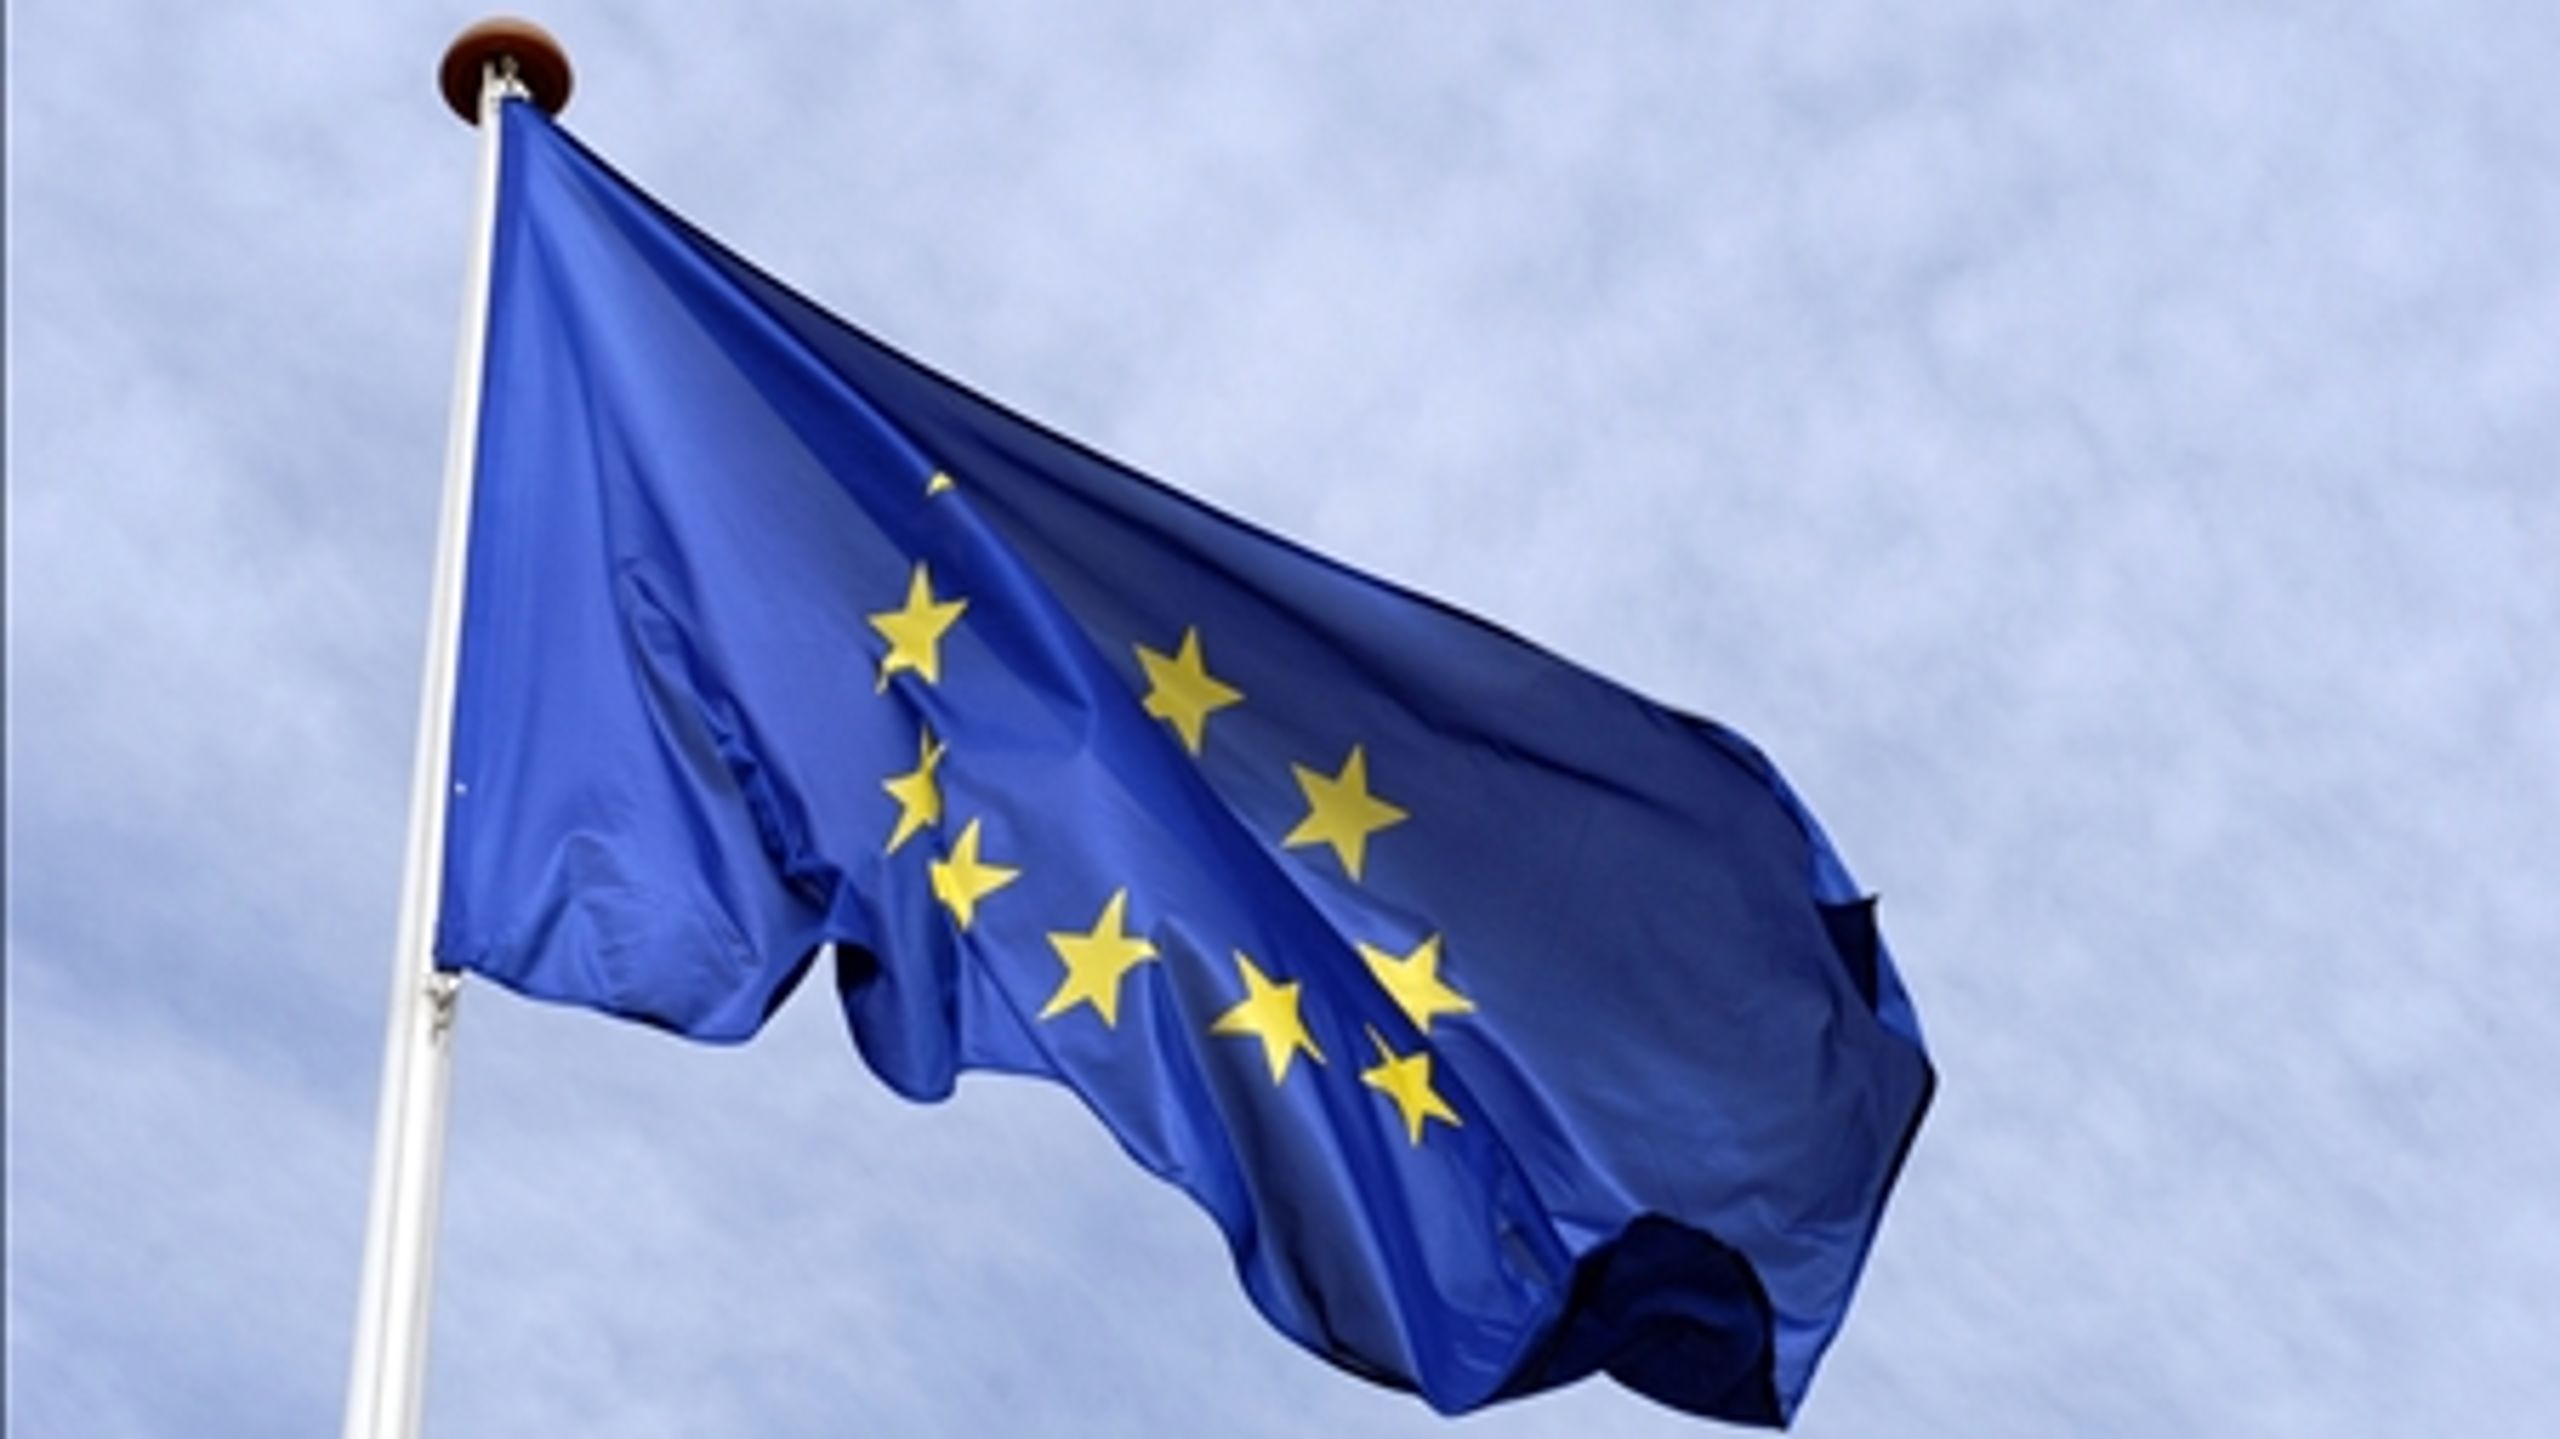 600 mia. euro vil EU-Kommissionen afsætte til forskning og innovation i perioden 2014-2020.